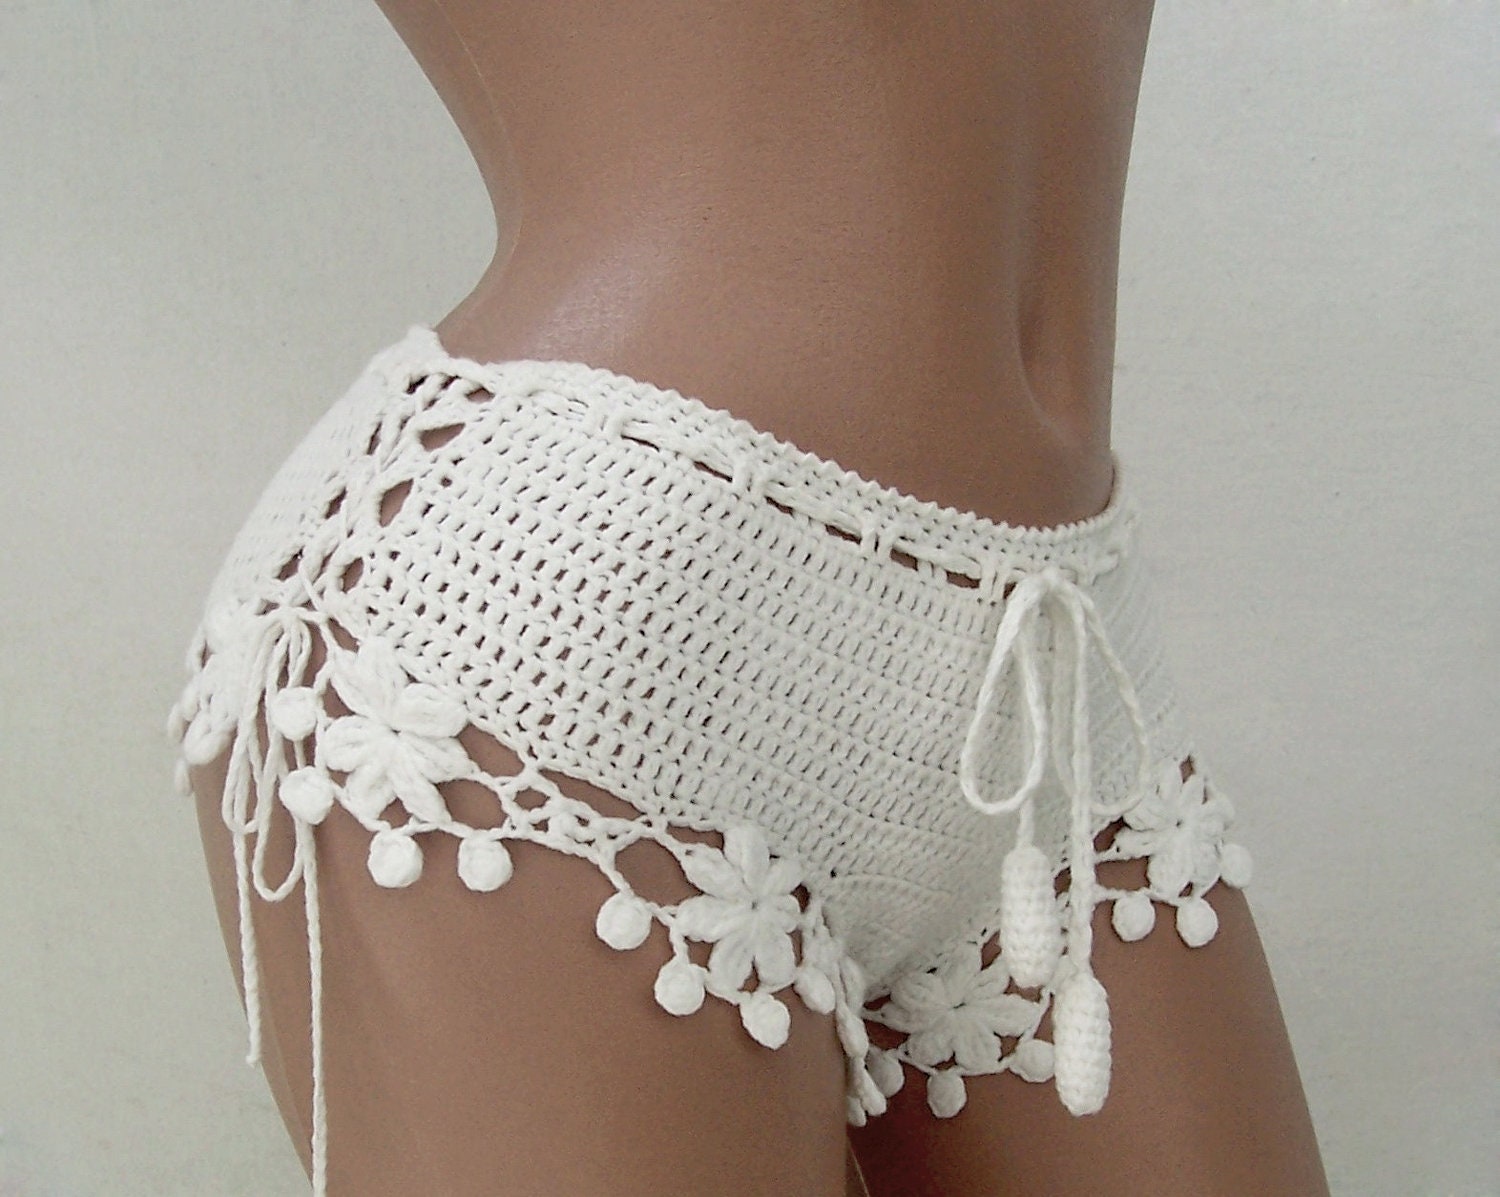 White Crochet Shorts